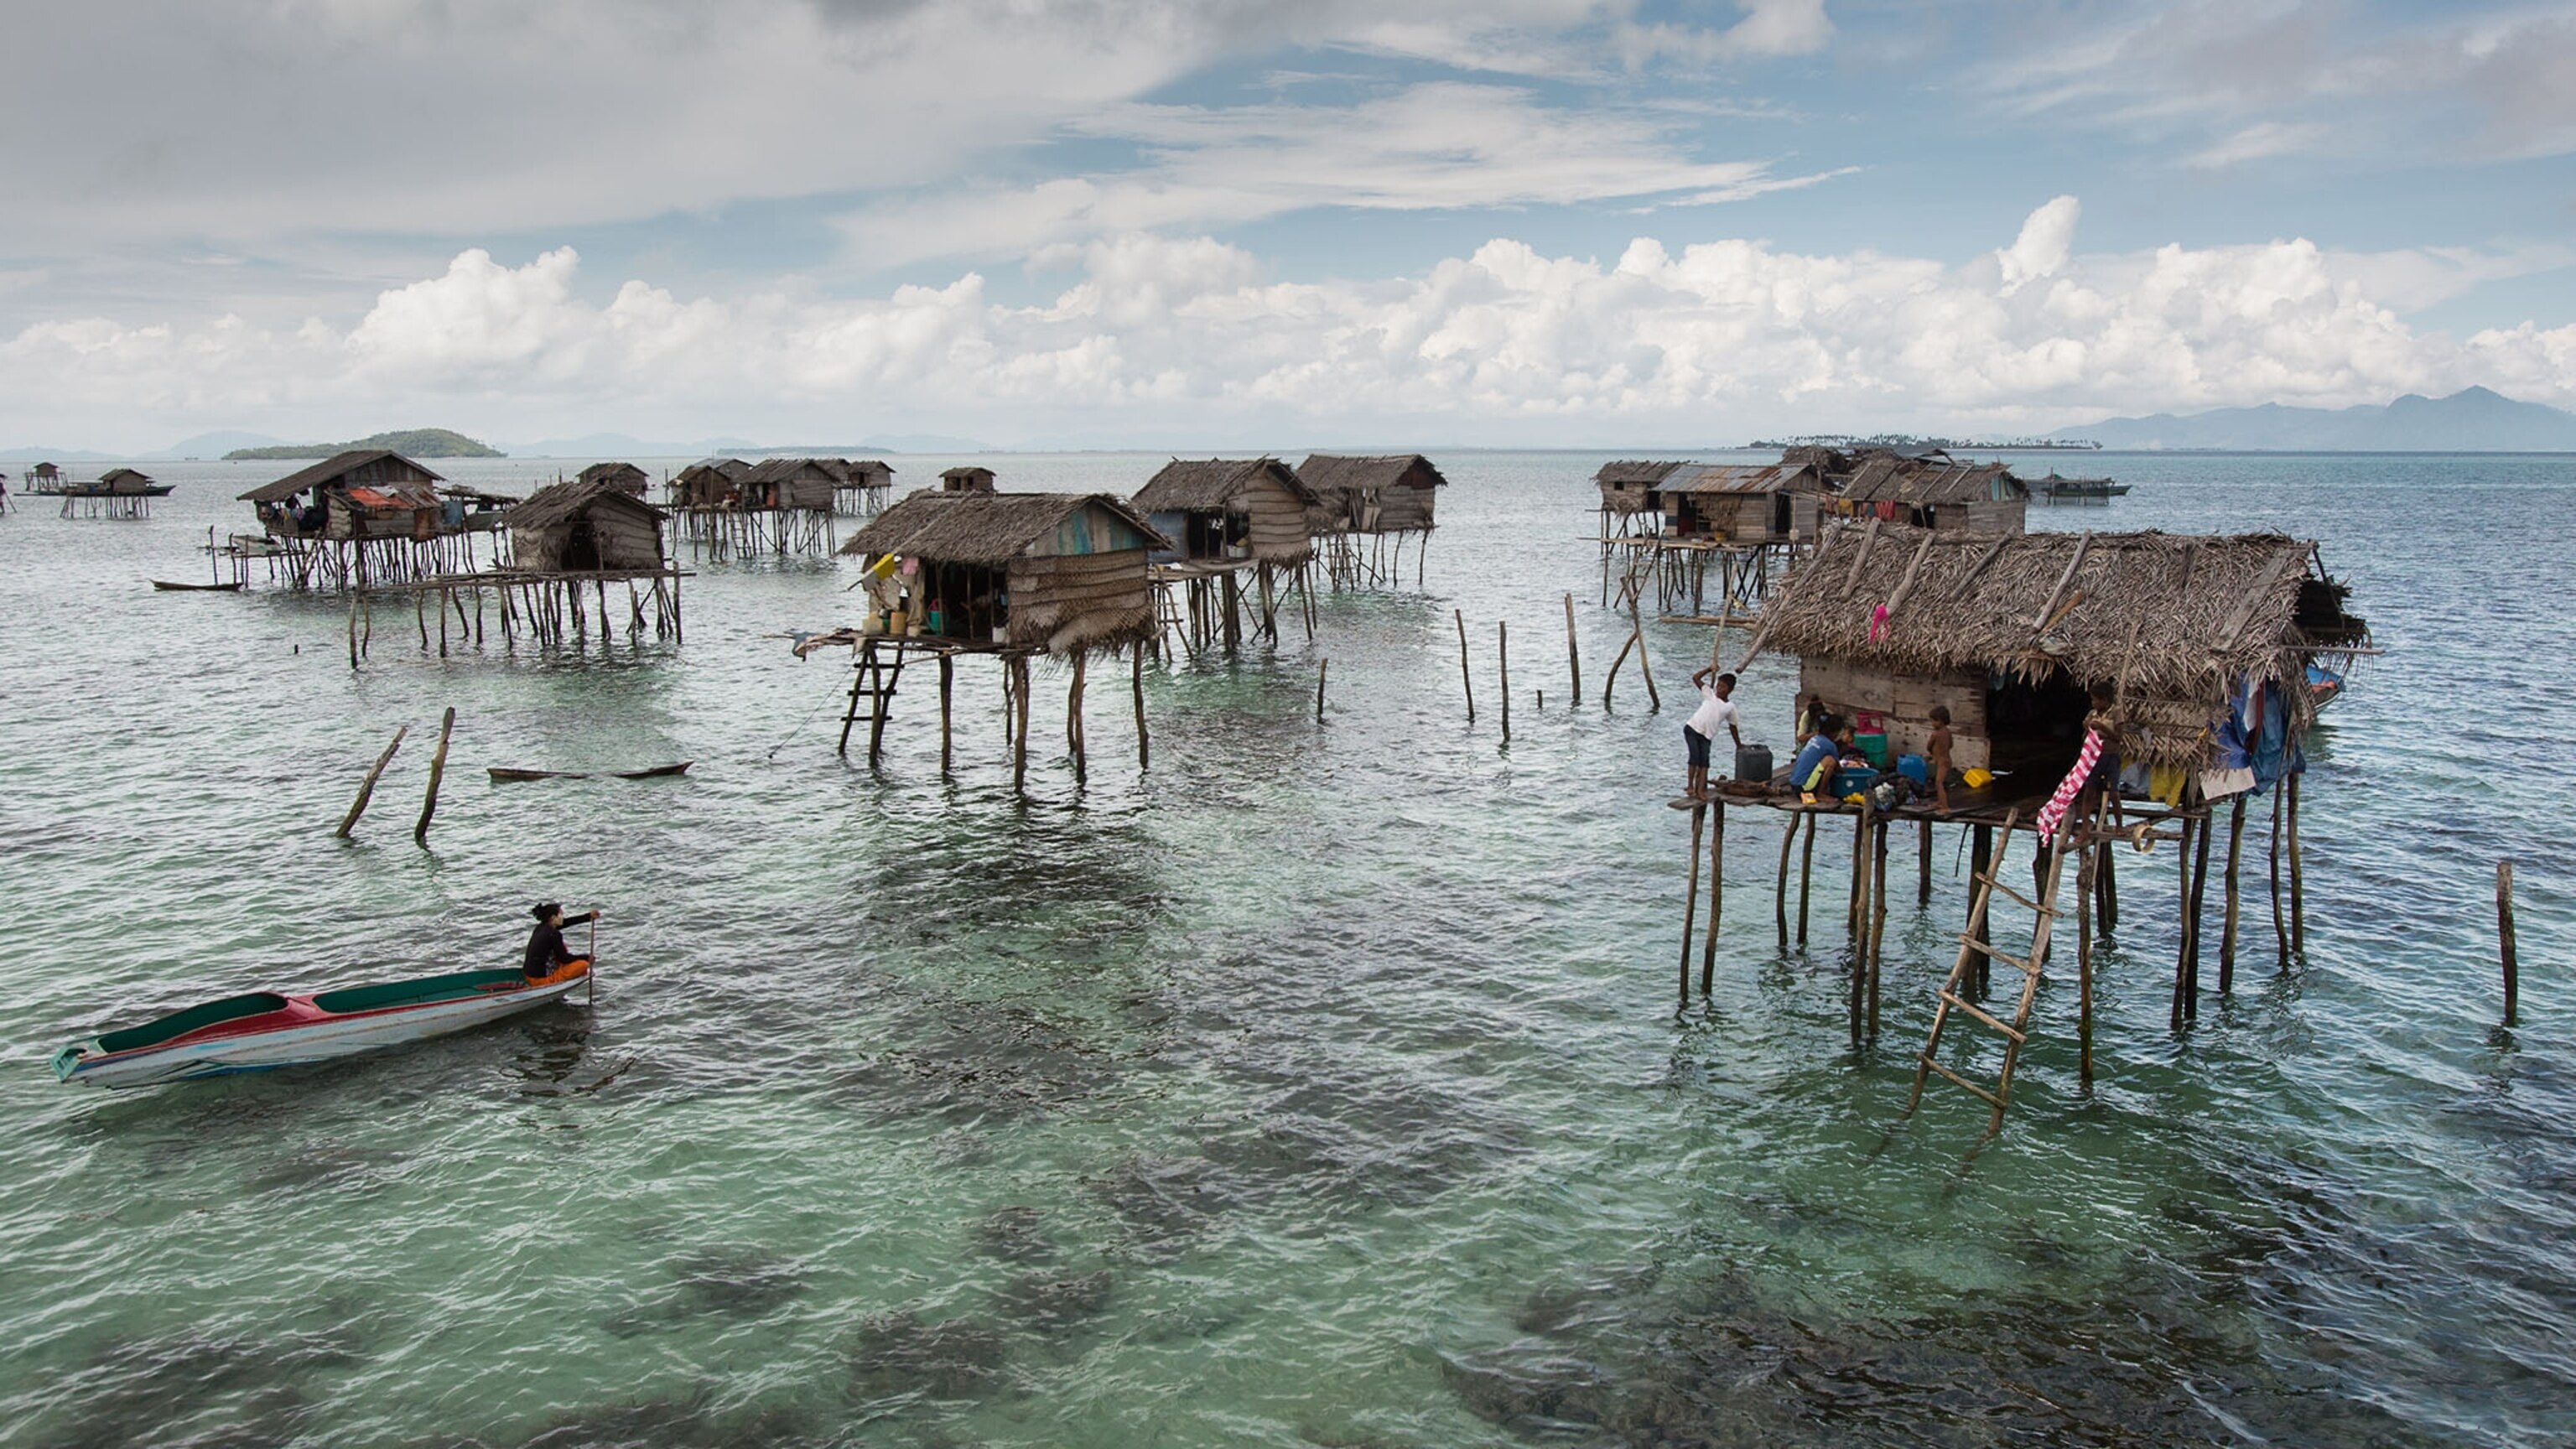 Bajau tribe houses based on the sea